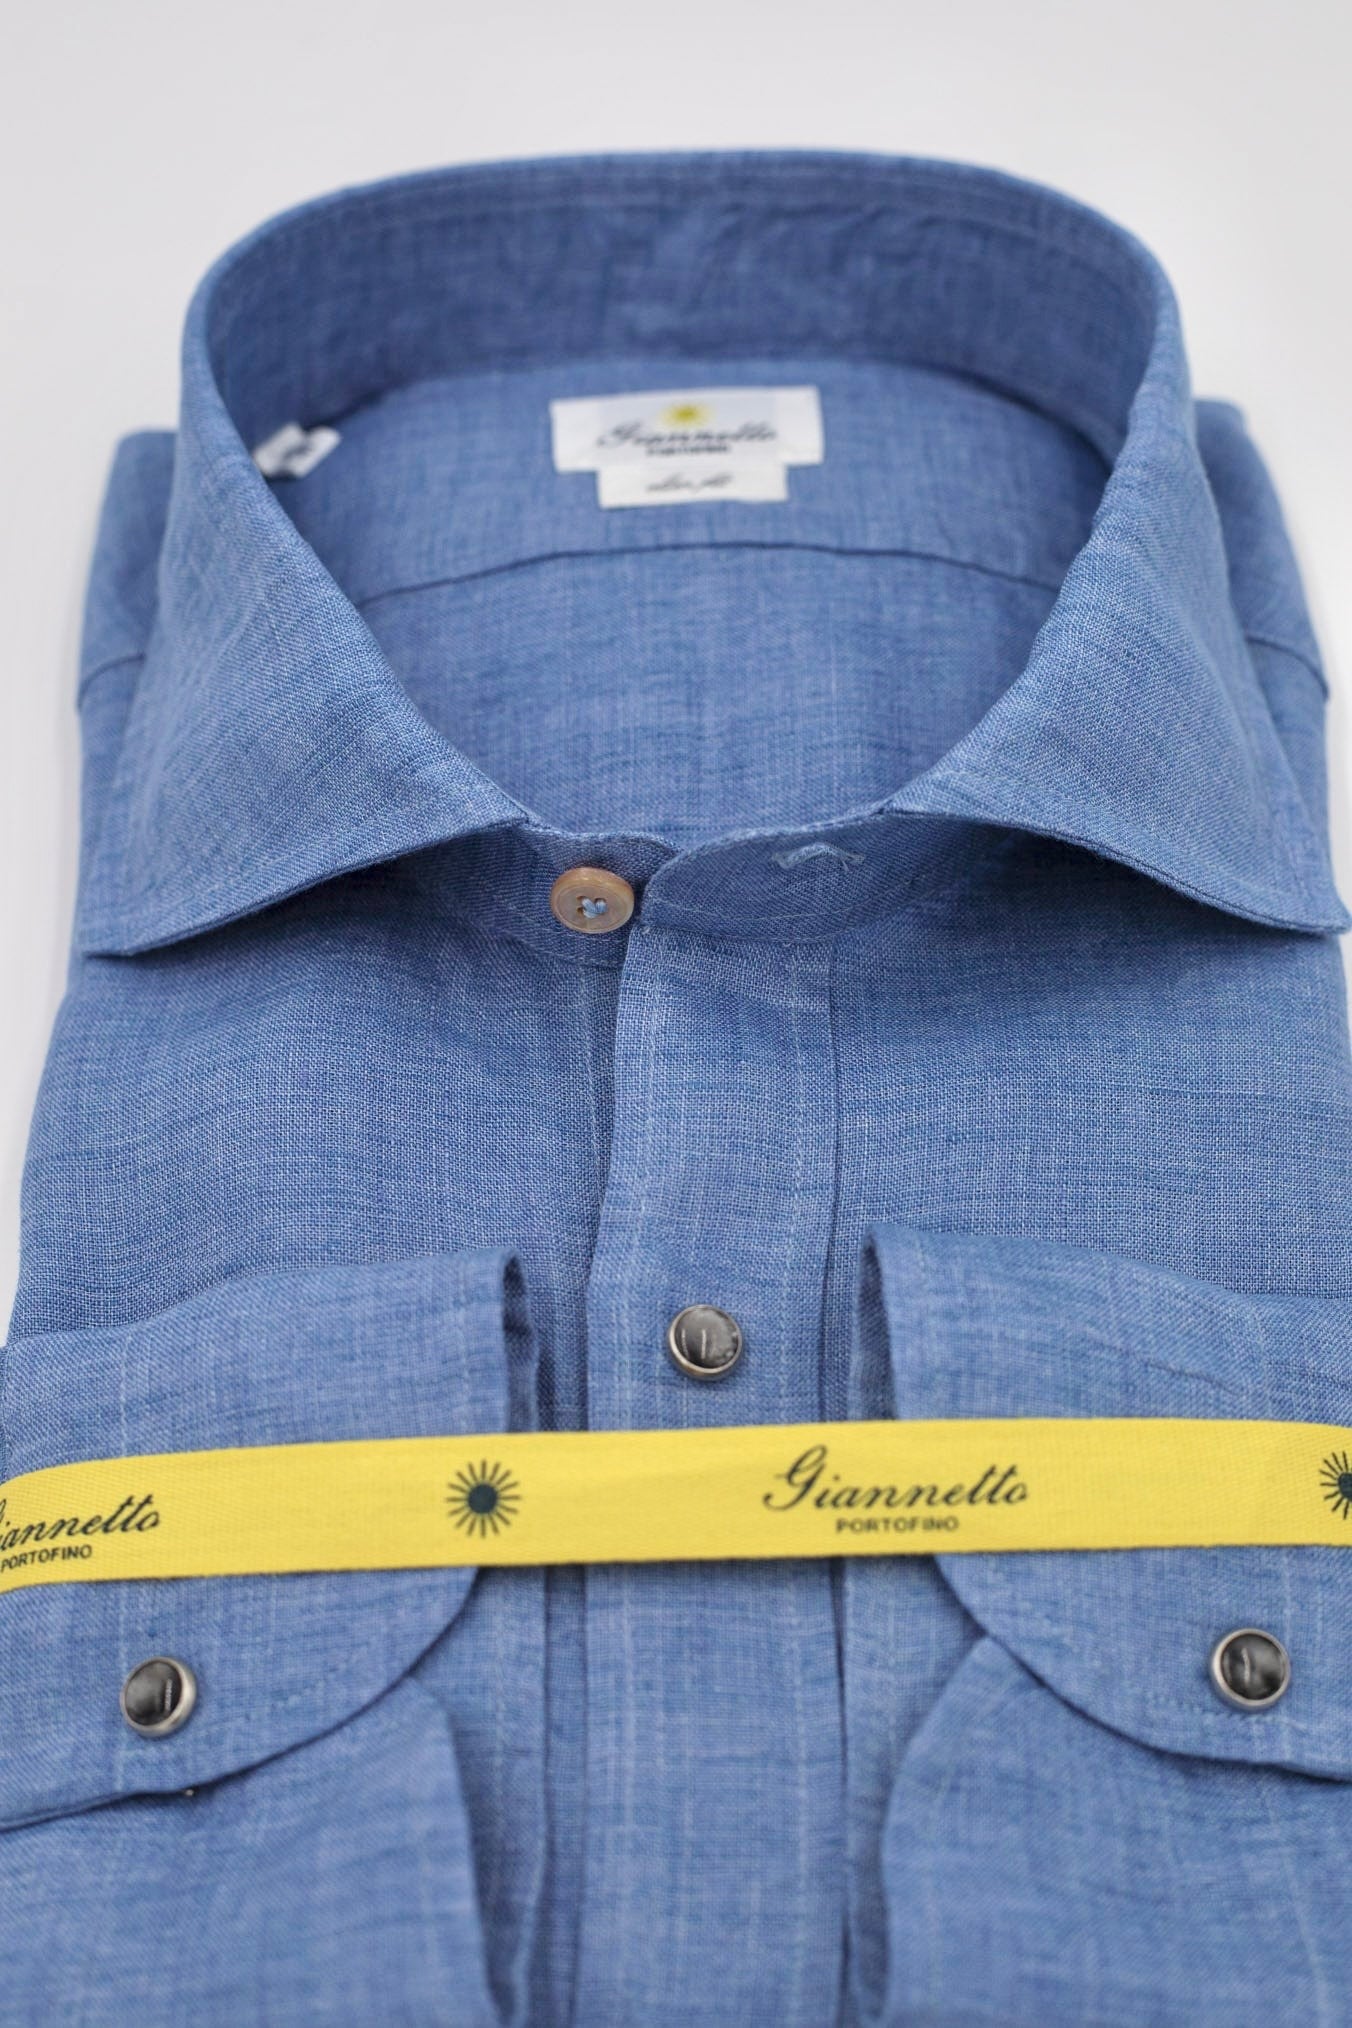 GIANNETTO PORTOFINO Light Blue Linen Shirt COMFORT FIT